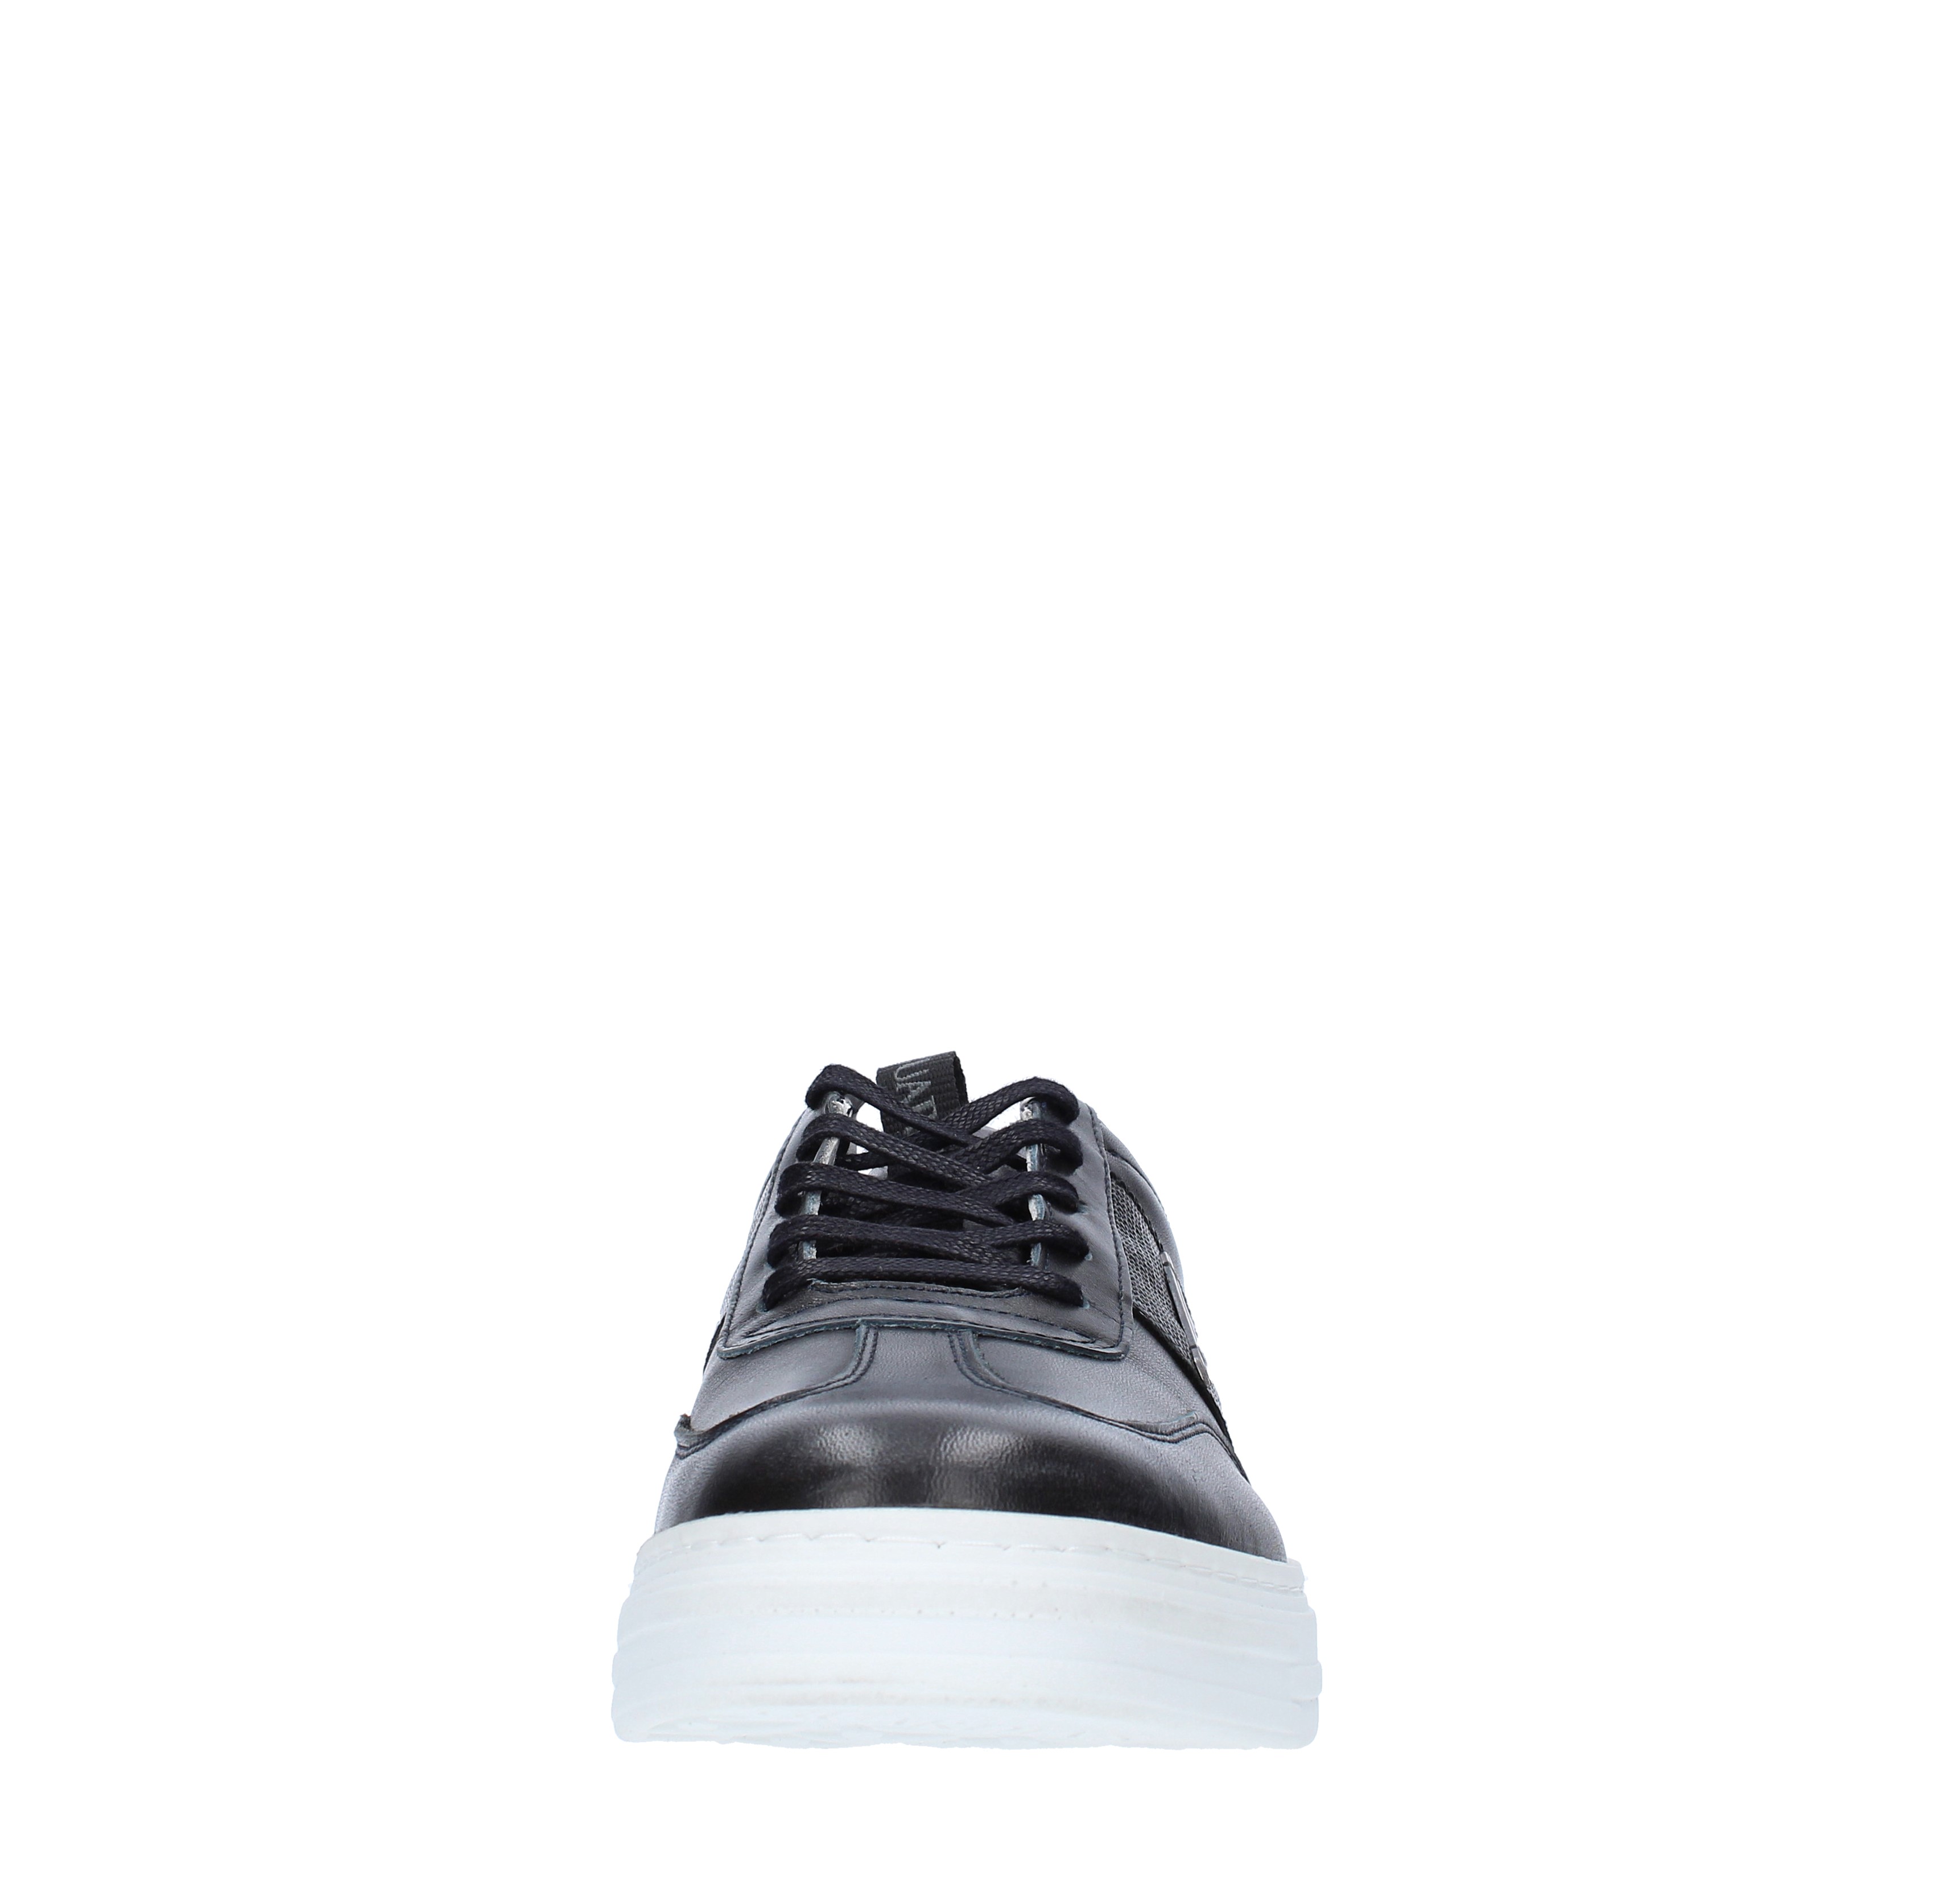 Leather sneakers GUARDIANI | AGU1011BLU SCURO